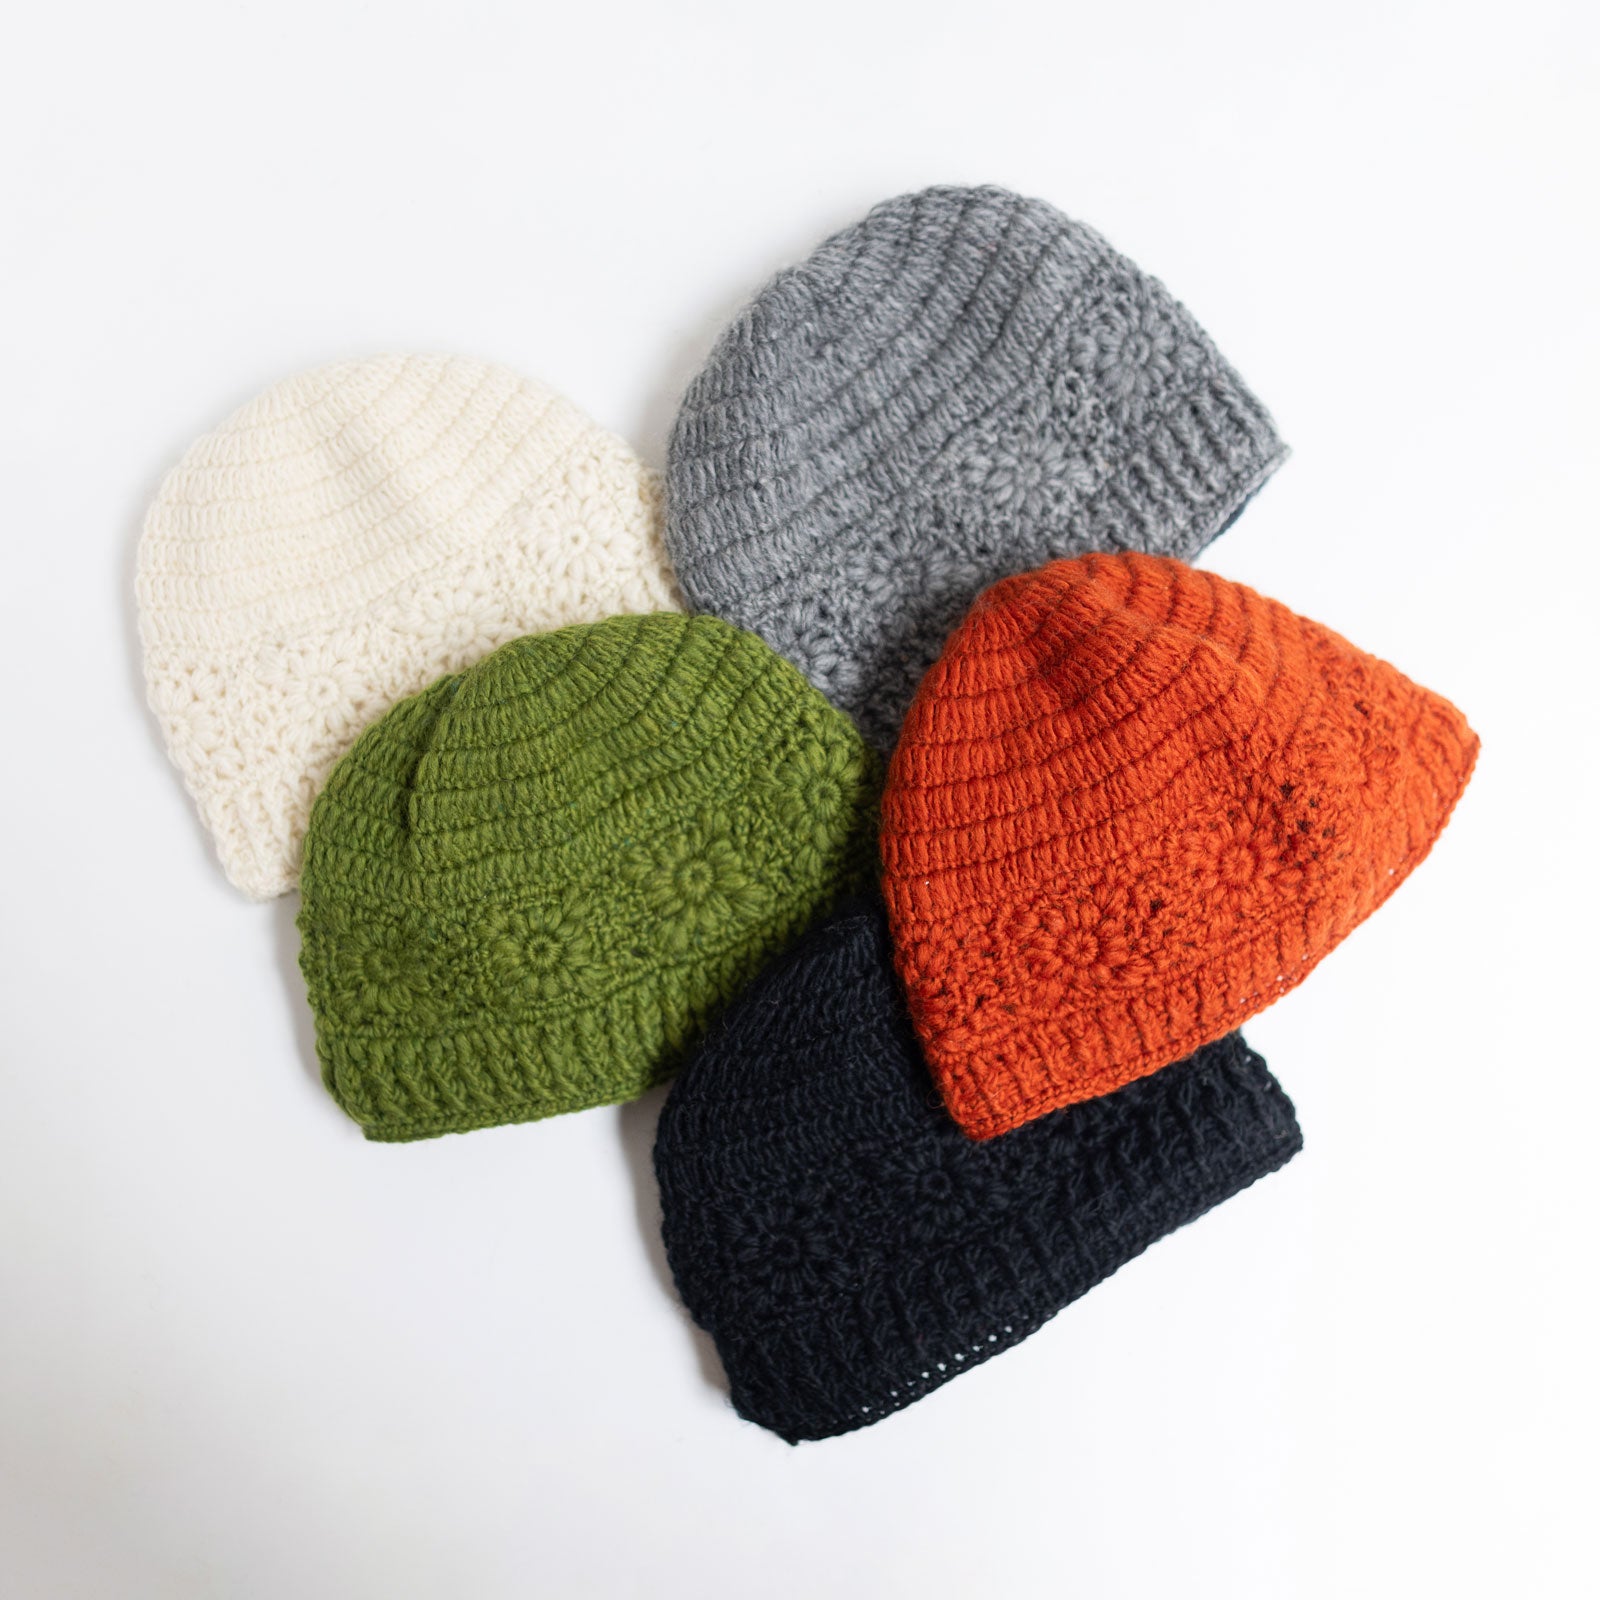 Granny Square Crochet Hats